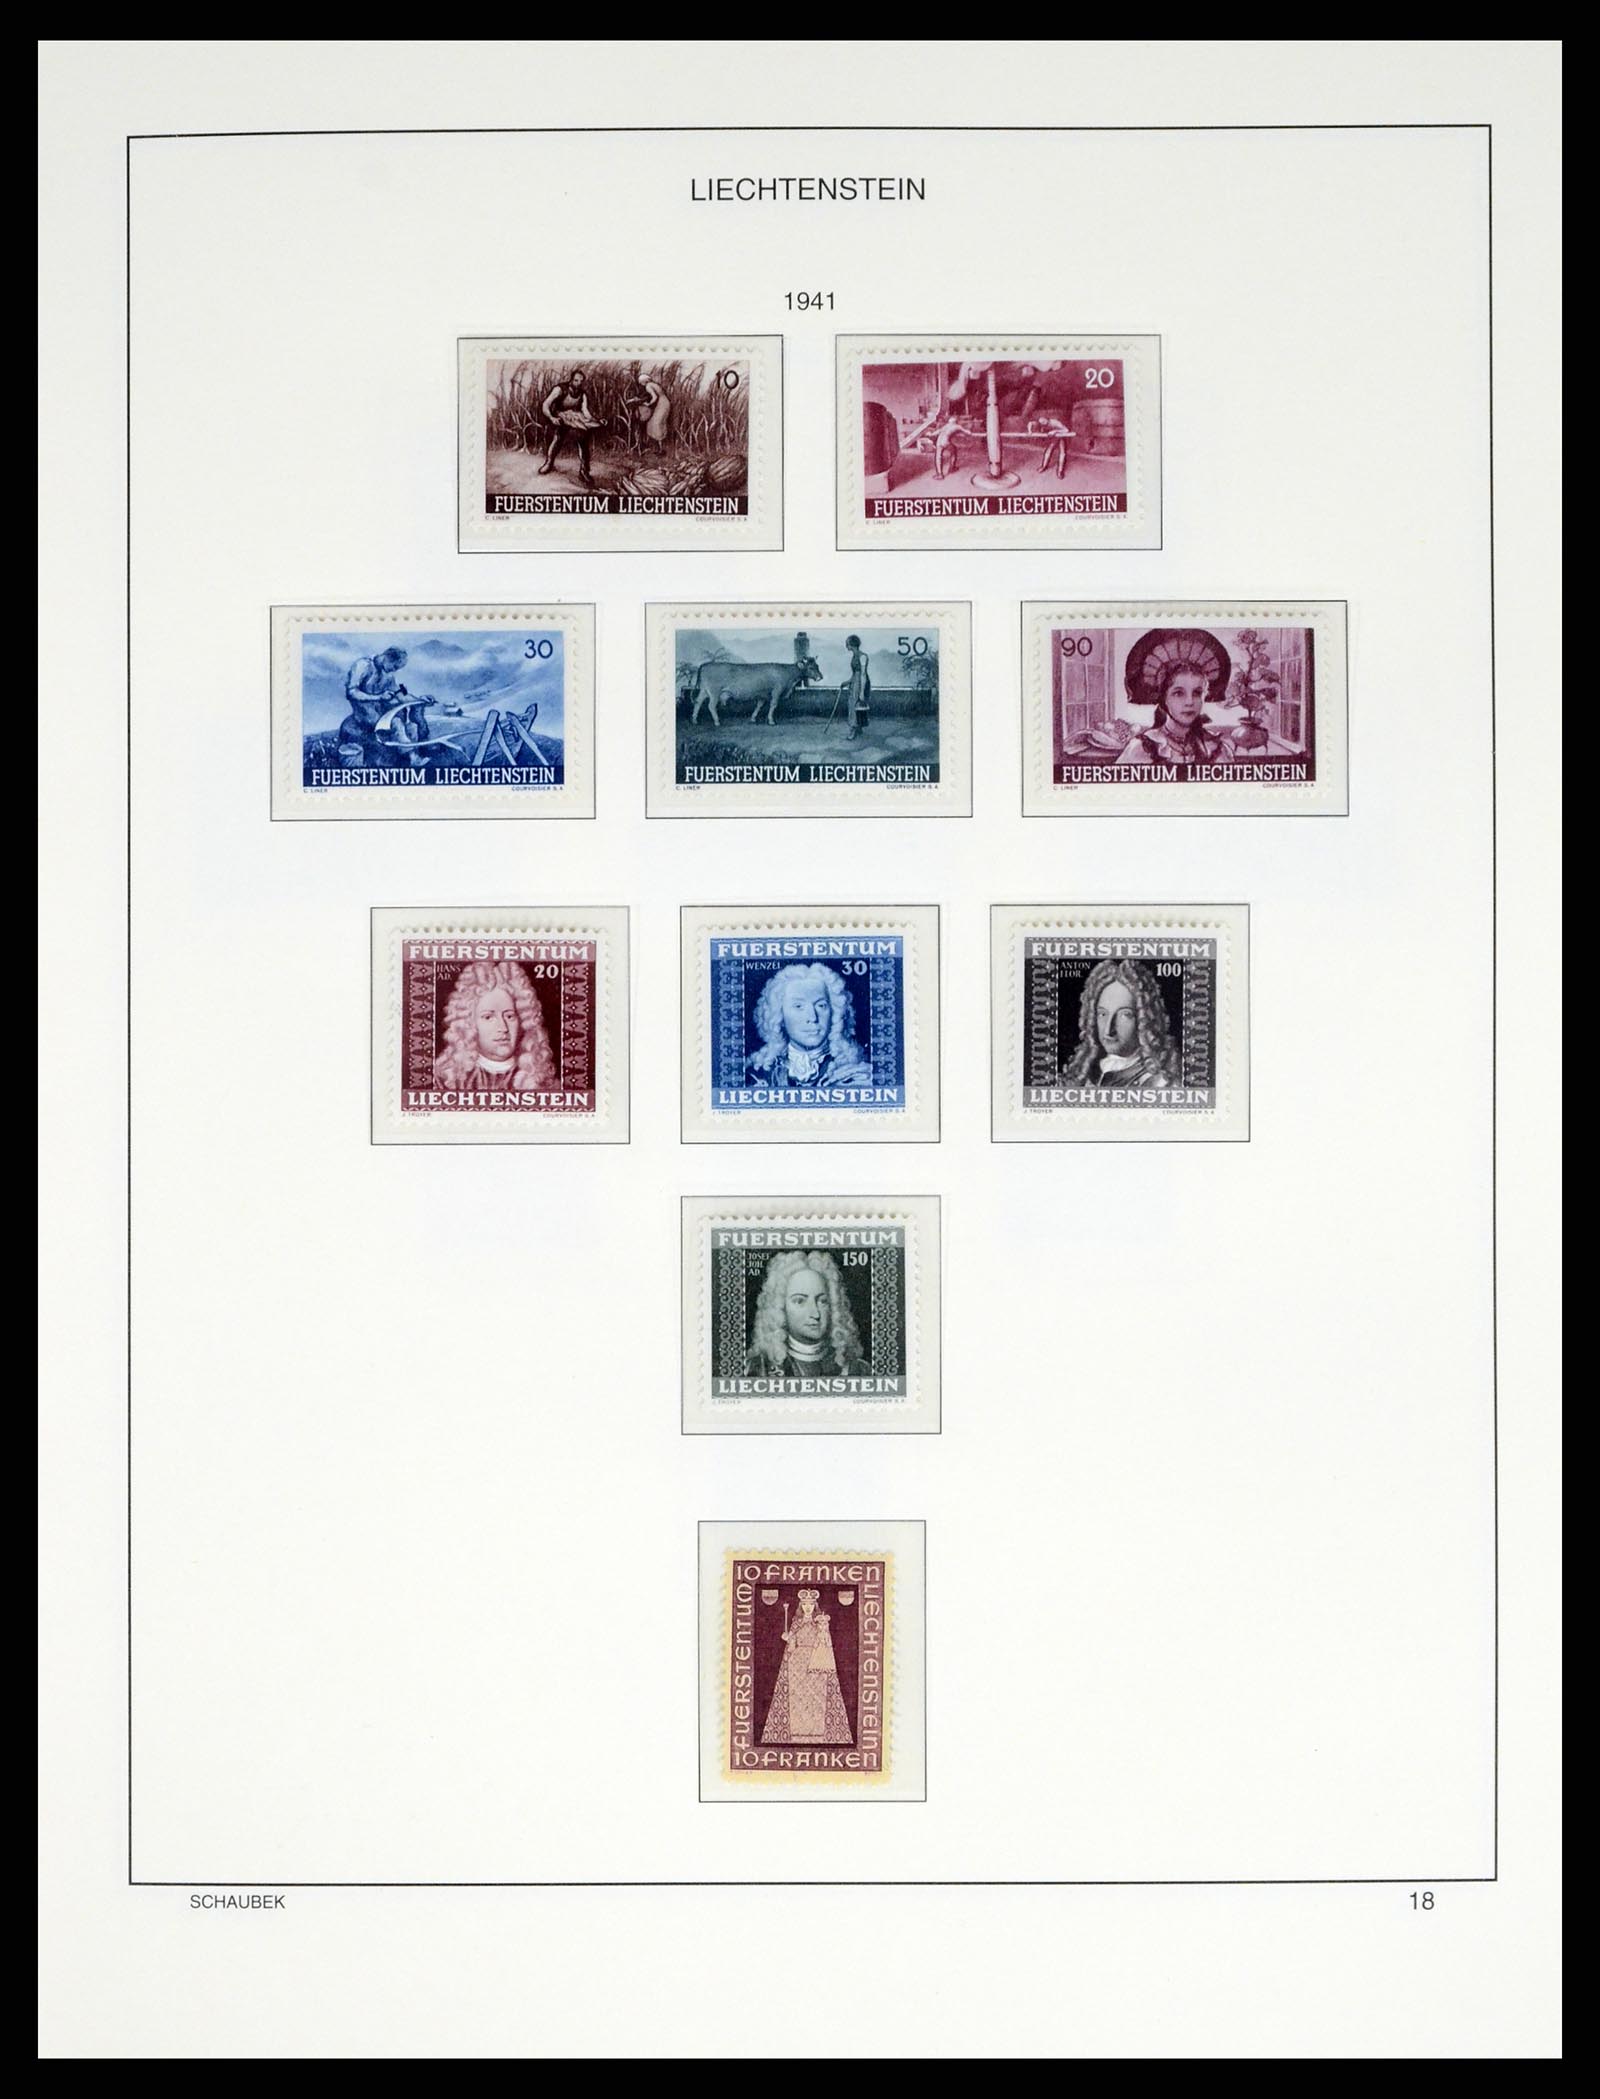 37547 021 - Stamp collection 37547 Liechtenstein 1912-2011.